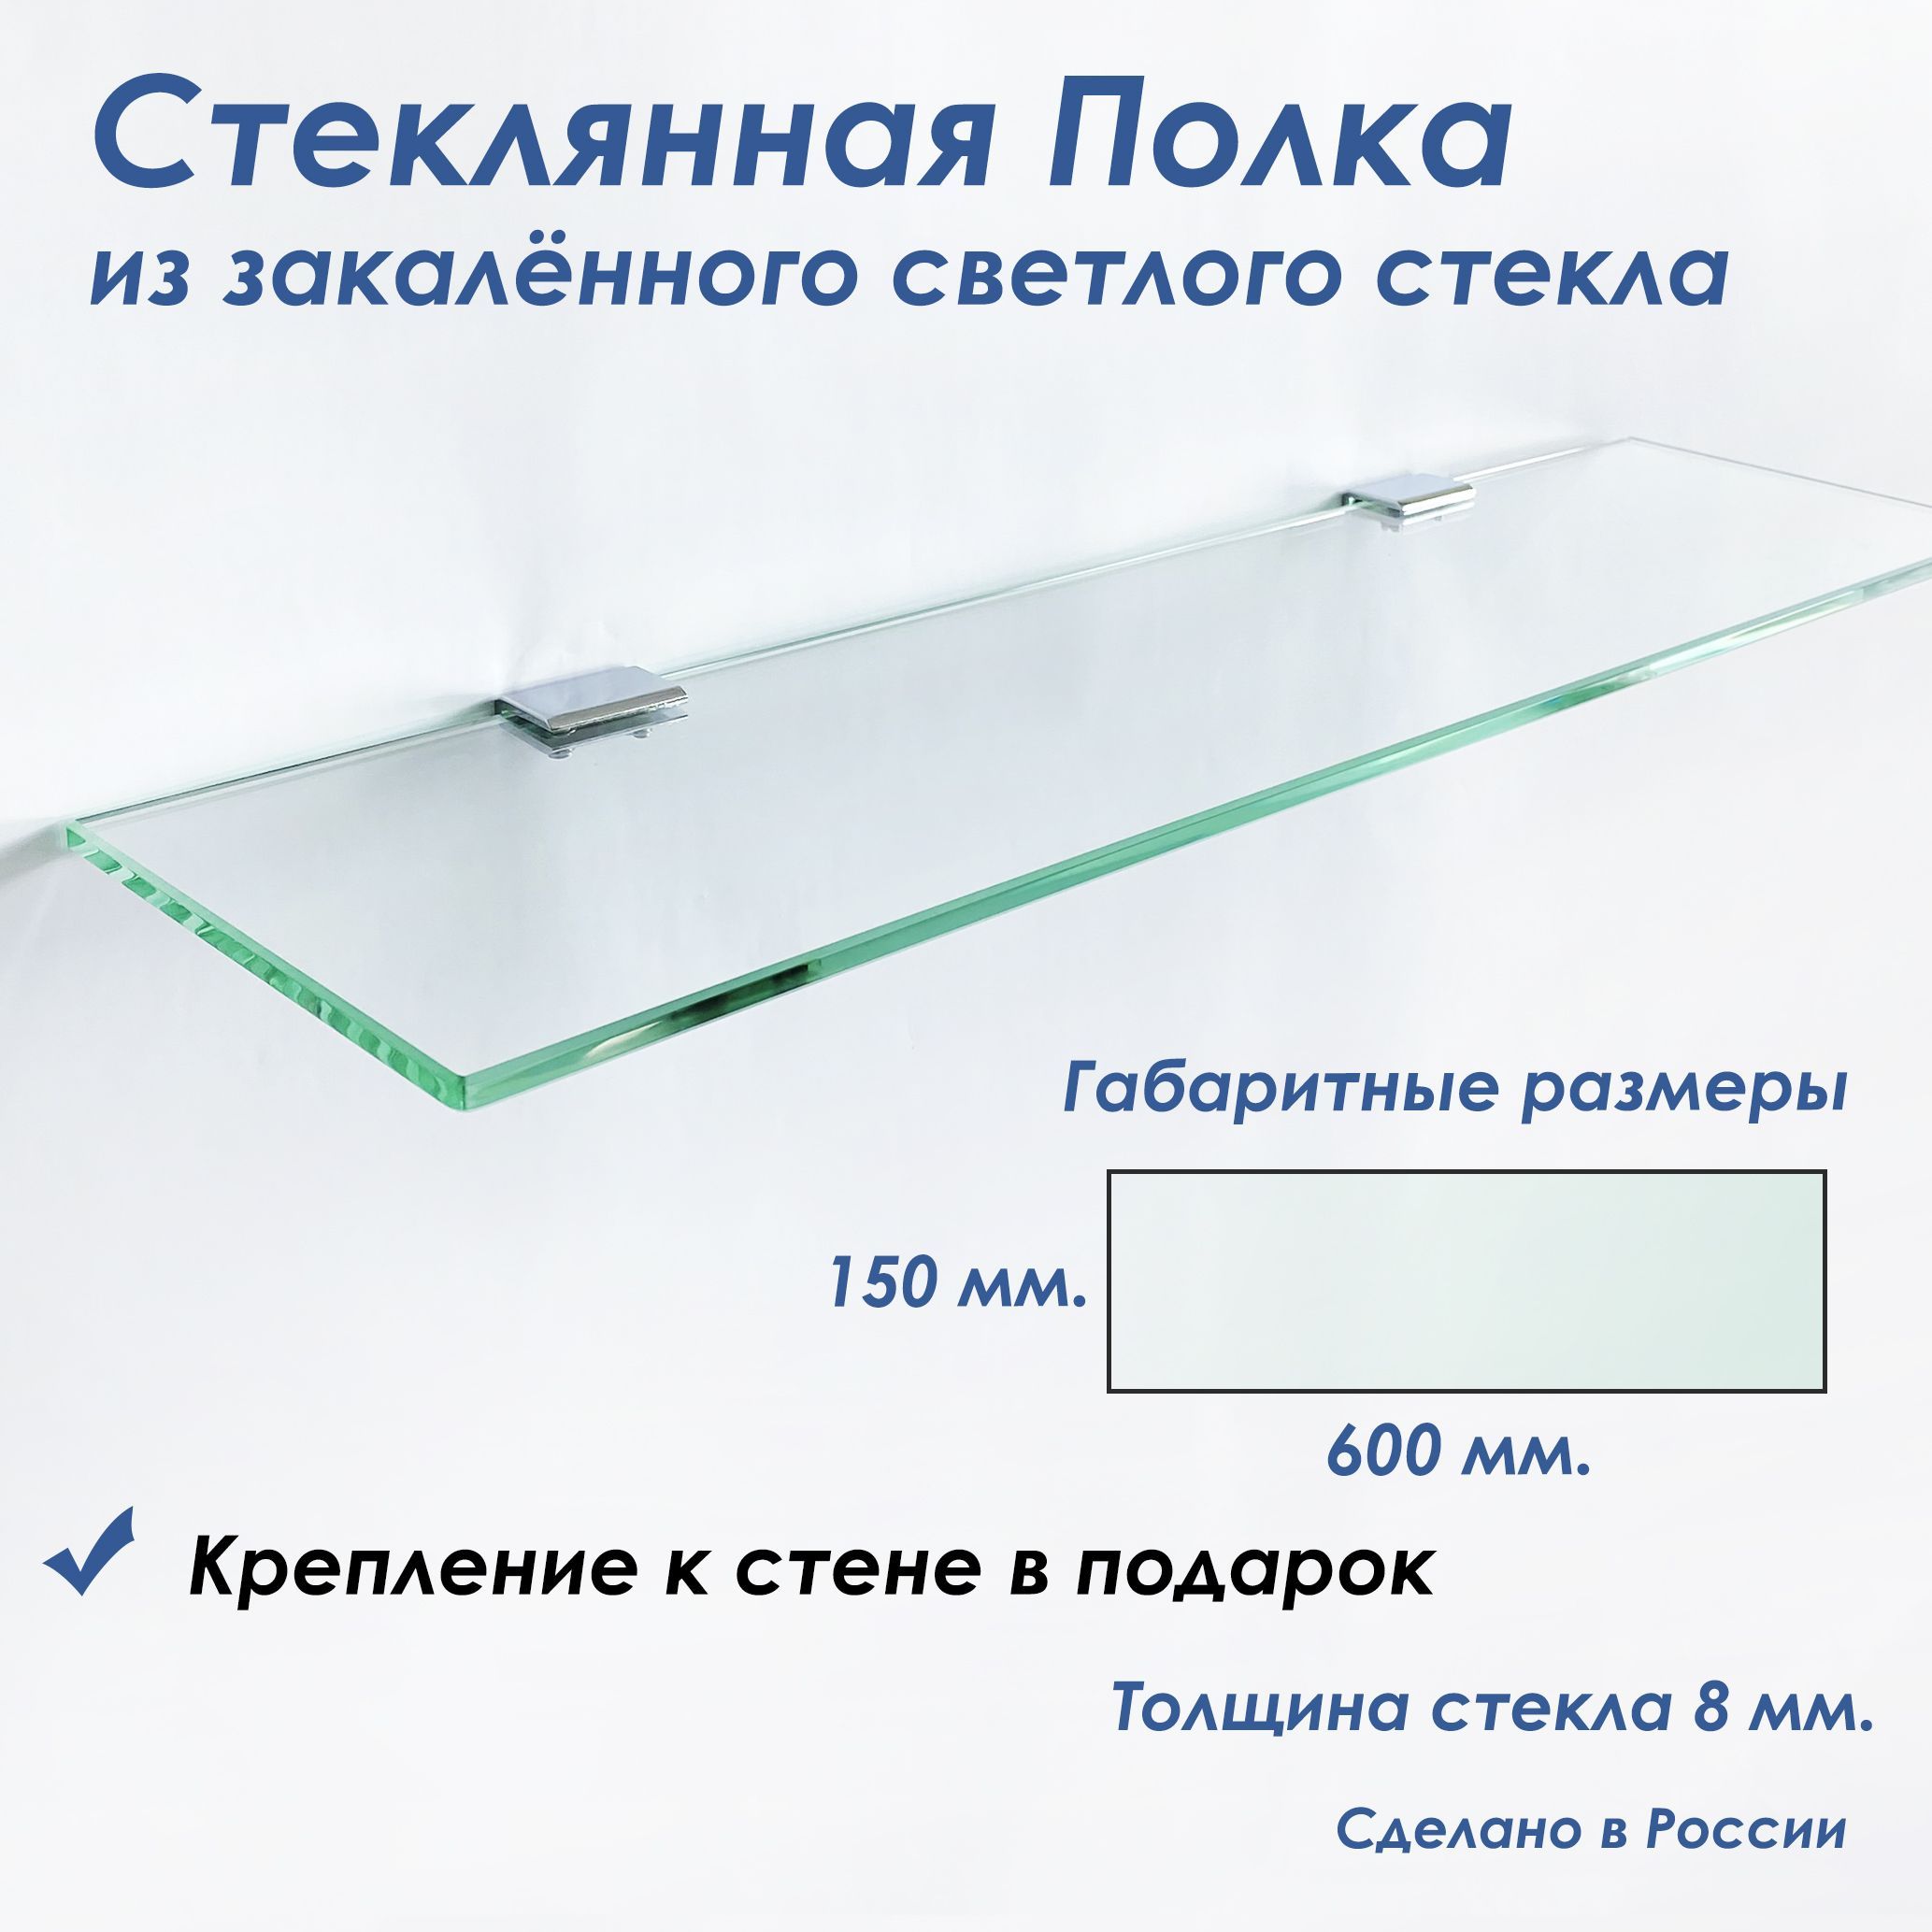 Полка СЕДАК из закаленного стекла, толщиной 8 мм 150х600 мм